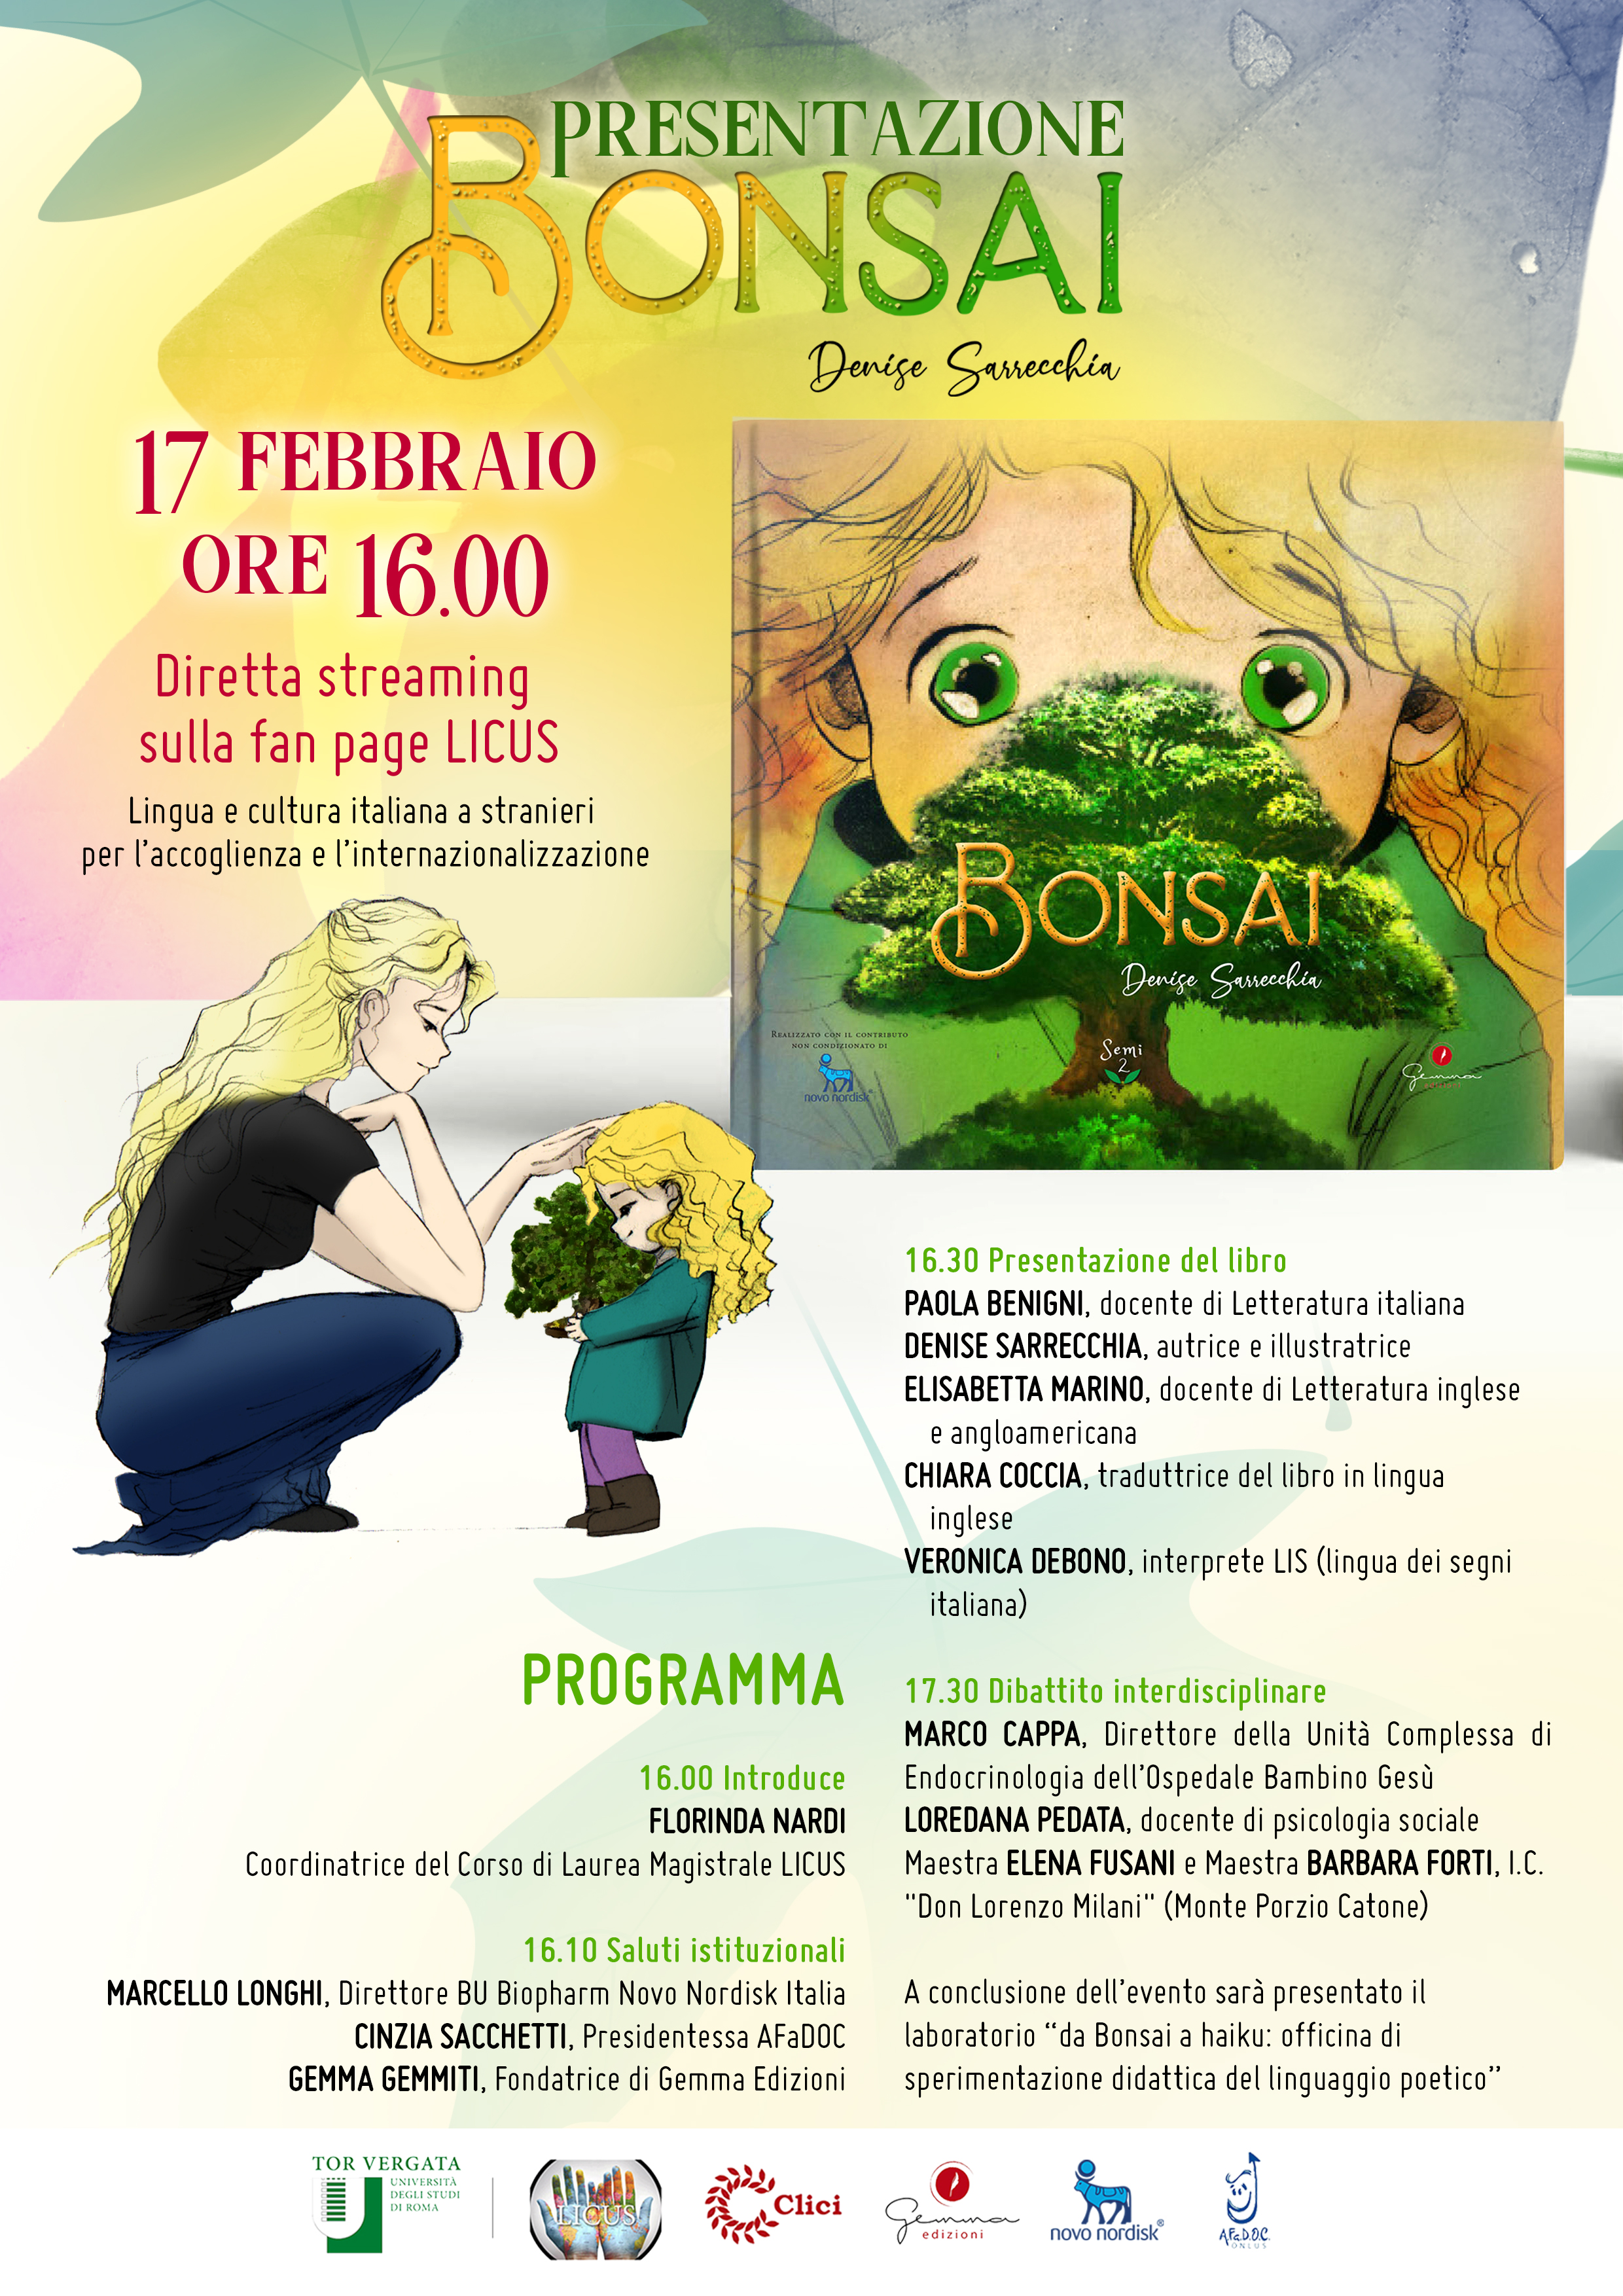 Presentazione del libro “Bonsai” 17 febbraio ore 16.00 Diretta streaming sulla fan page LICUS